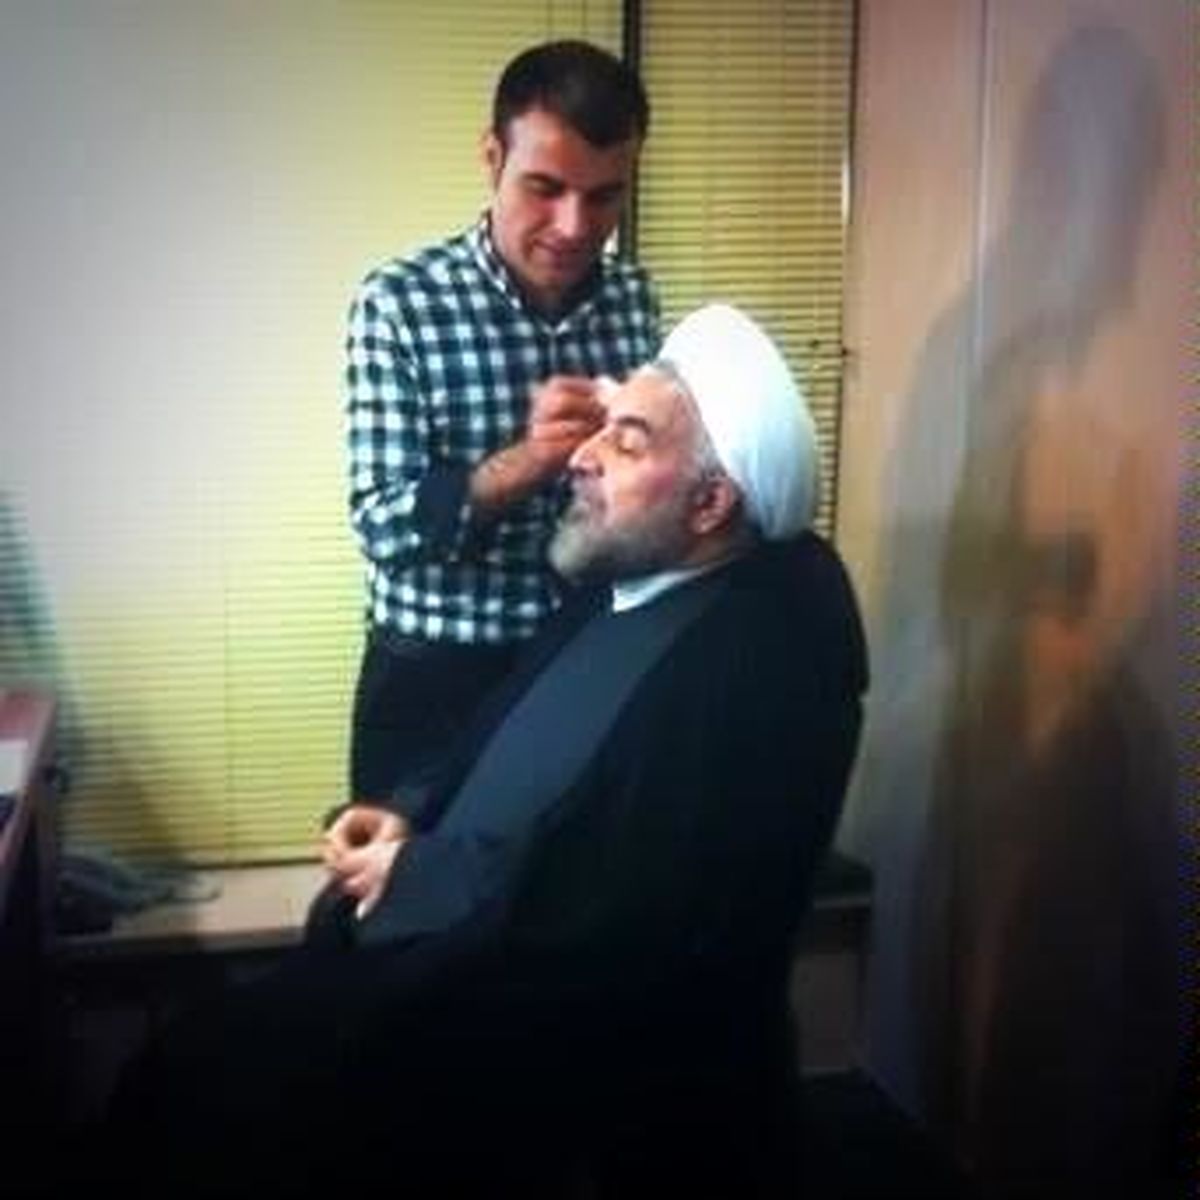 صداوسیمای ملی یا ستاد انتخابات حسن روحانی؟